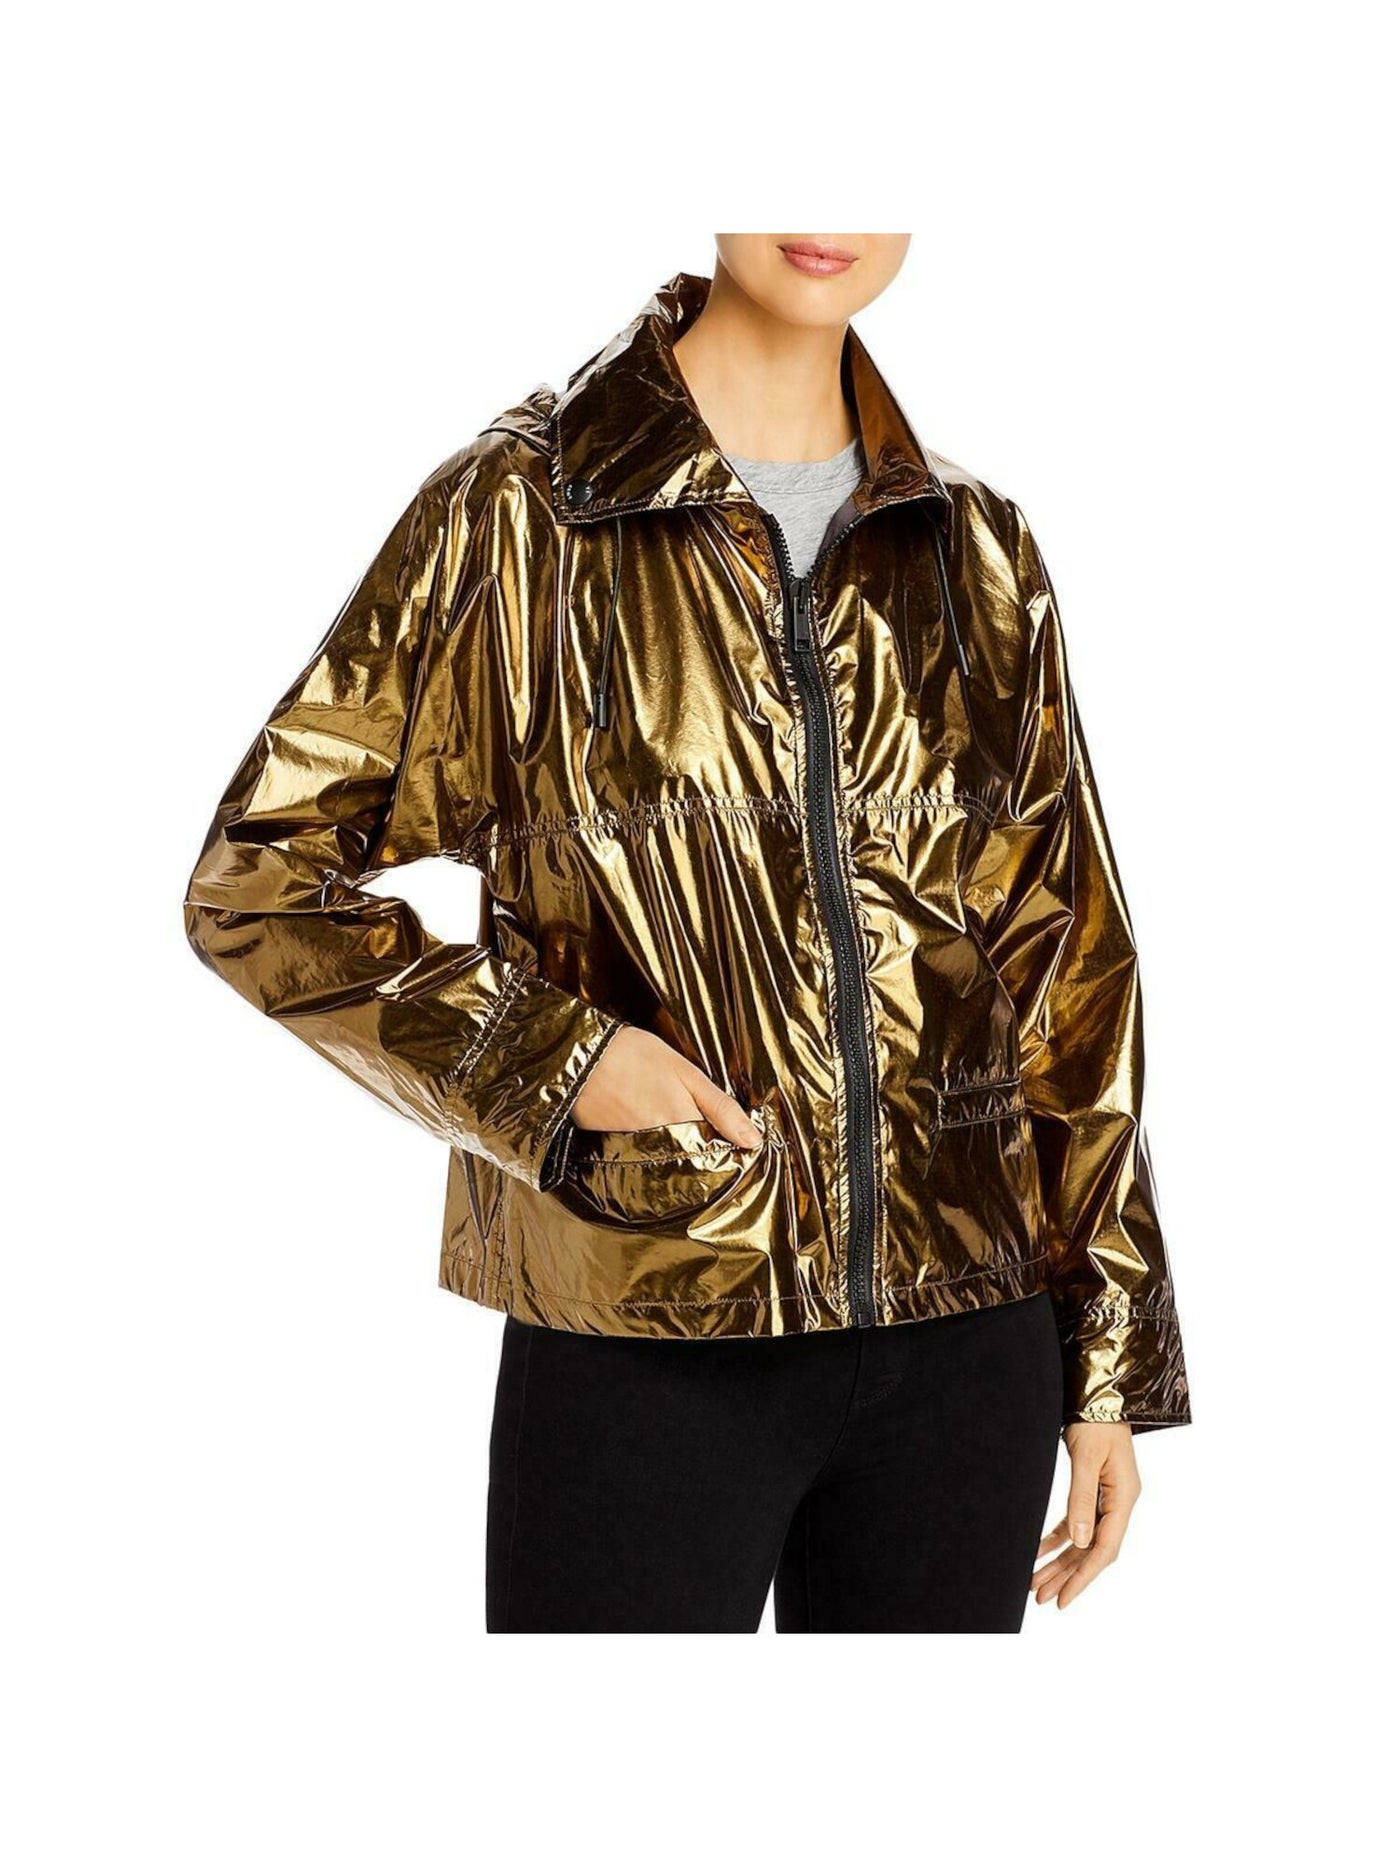 YS ARMY Womens Gold Hooded Wind Breaker Jacket Size: 34